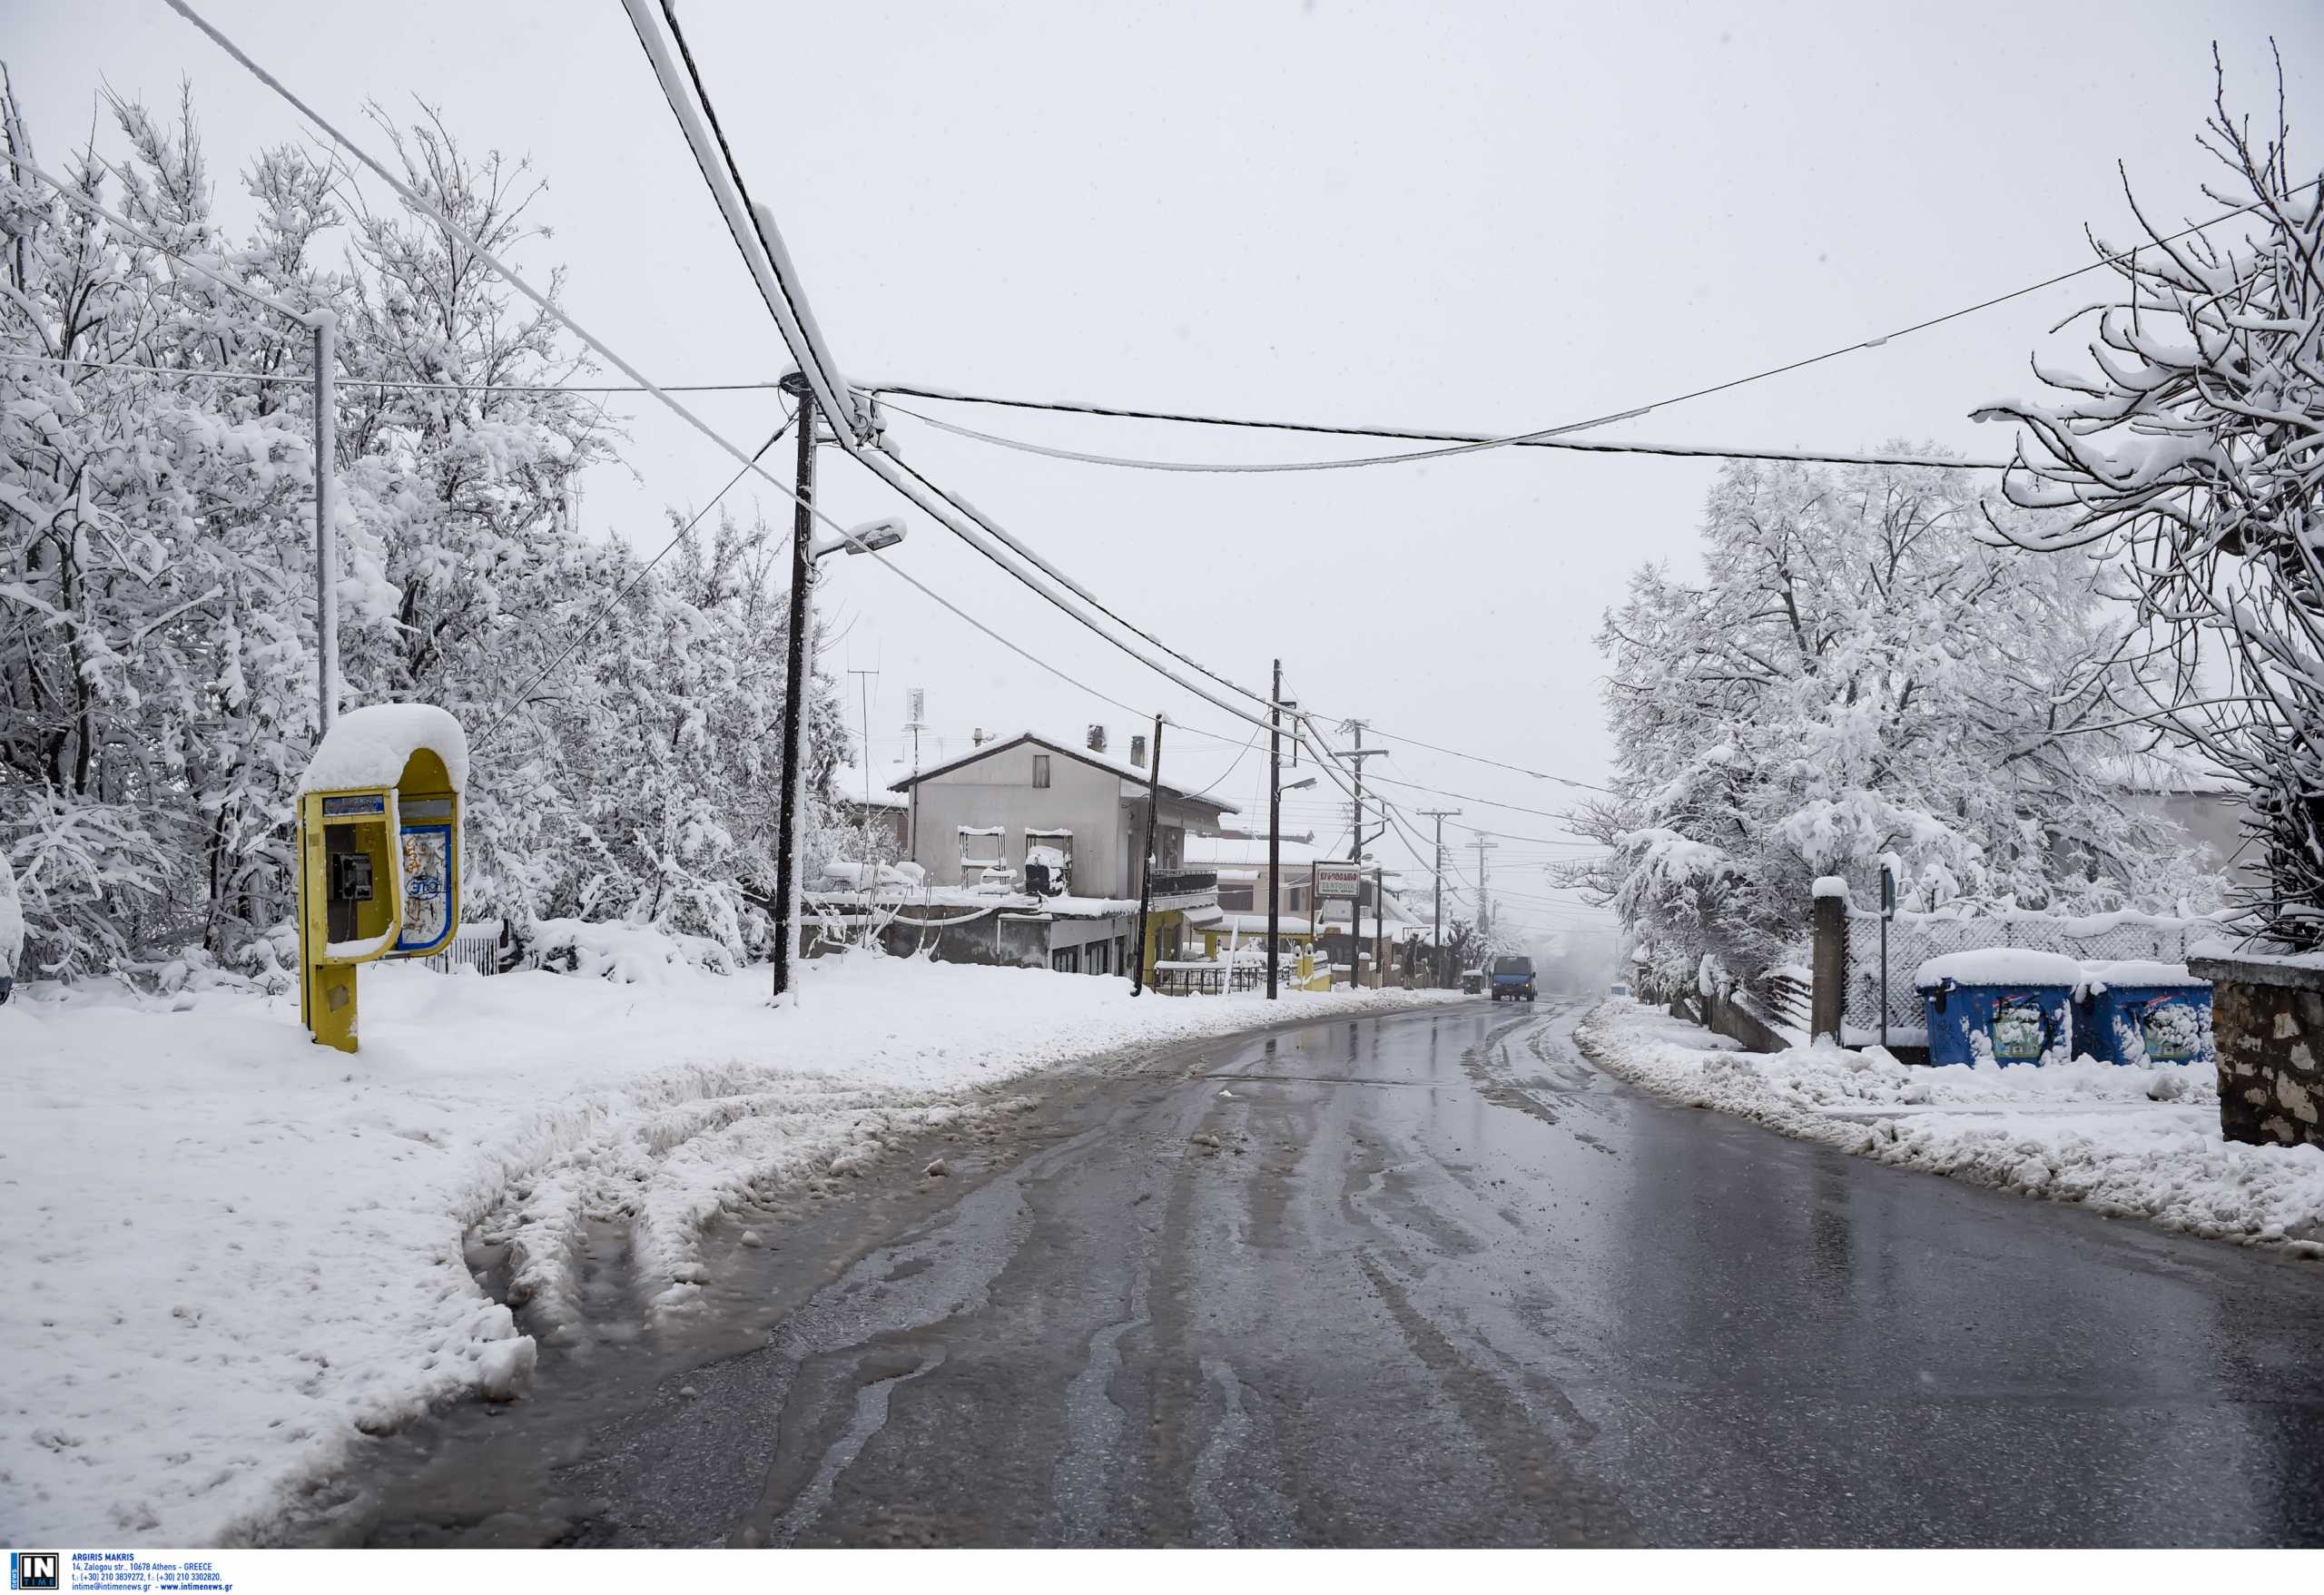 Κακοκαιρία «Μήδεια»: Προ των πυλών ισχυρός χιονιάς με πολικές θερμοκρασίες – Πότε και πού θα χτυπήσει (pics, vid)